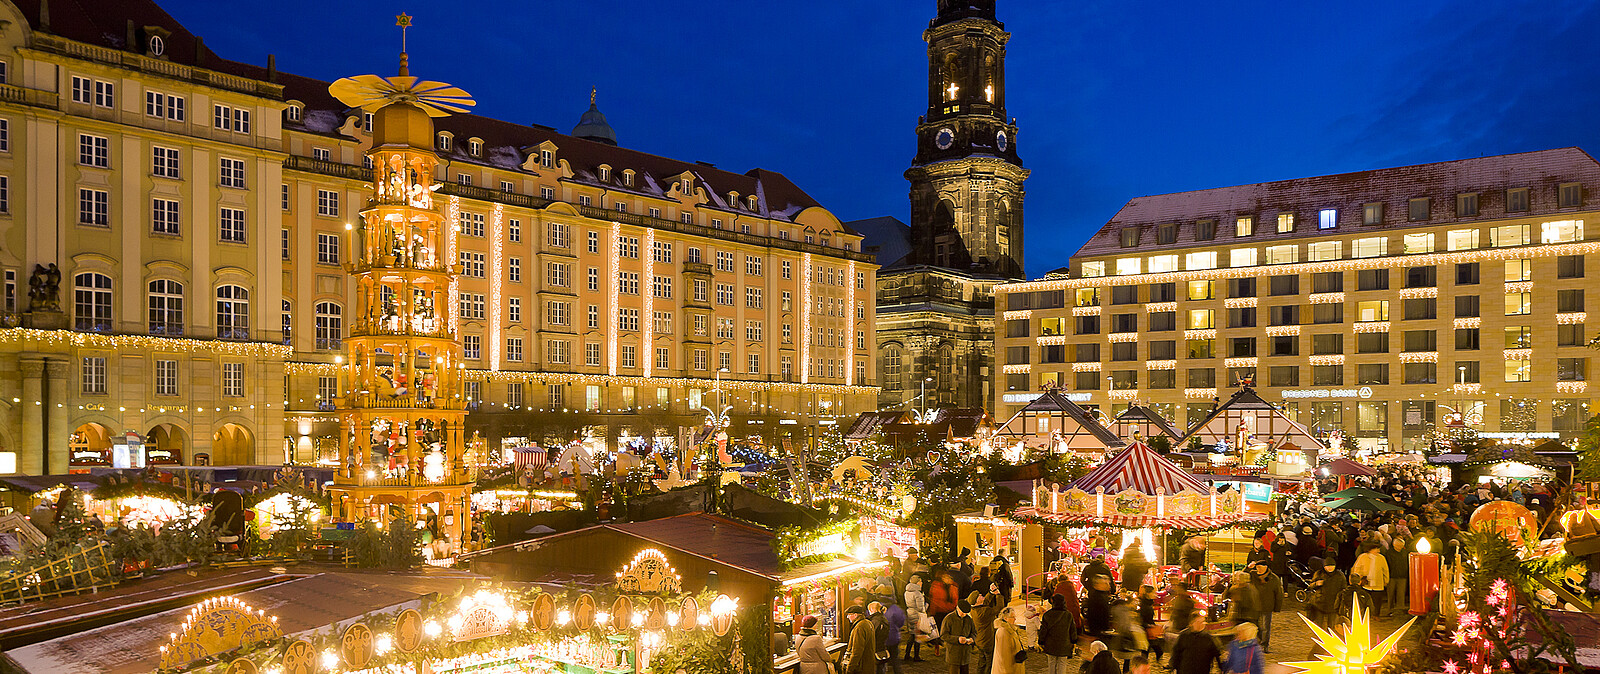 Ohne Zweifel gehört der Dresdner Striezelmarkt im Advent zu den meistbesuchten Orten in Sachsen